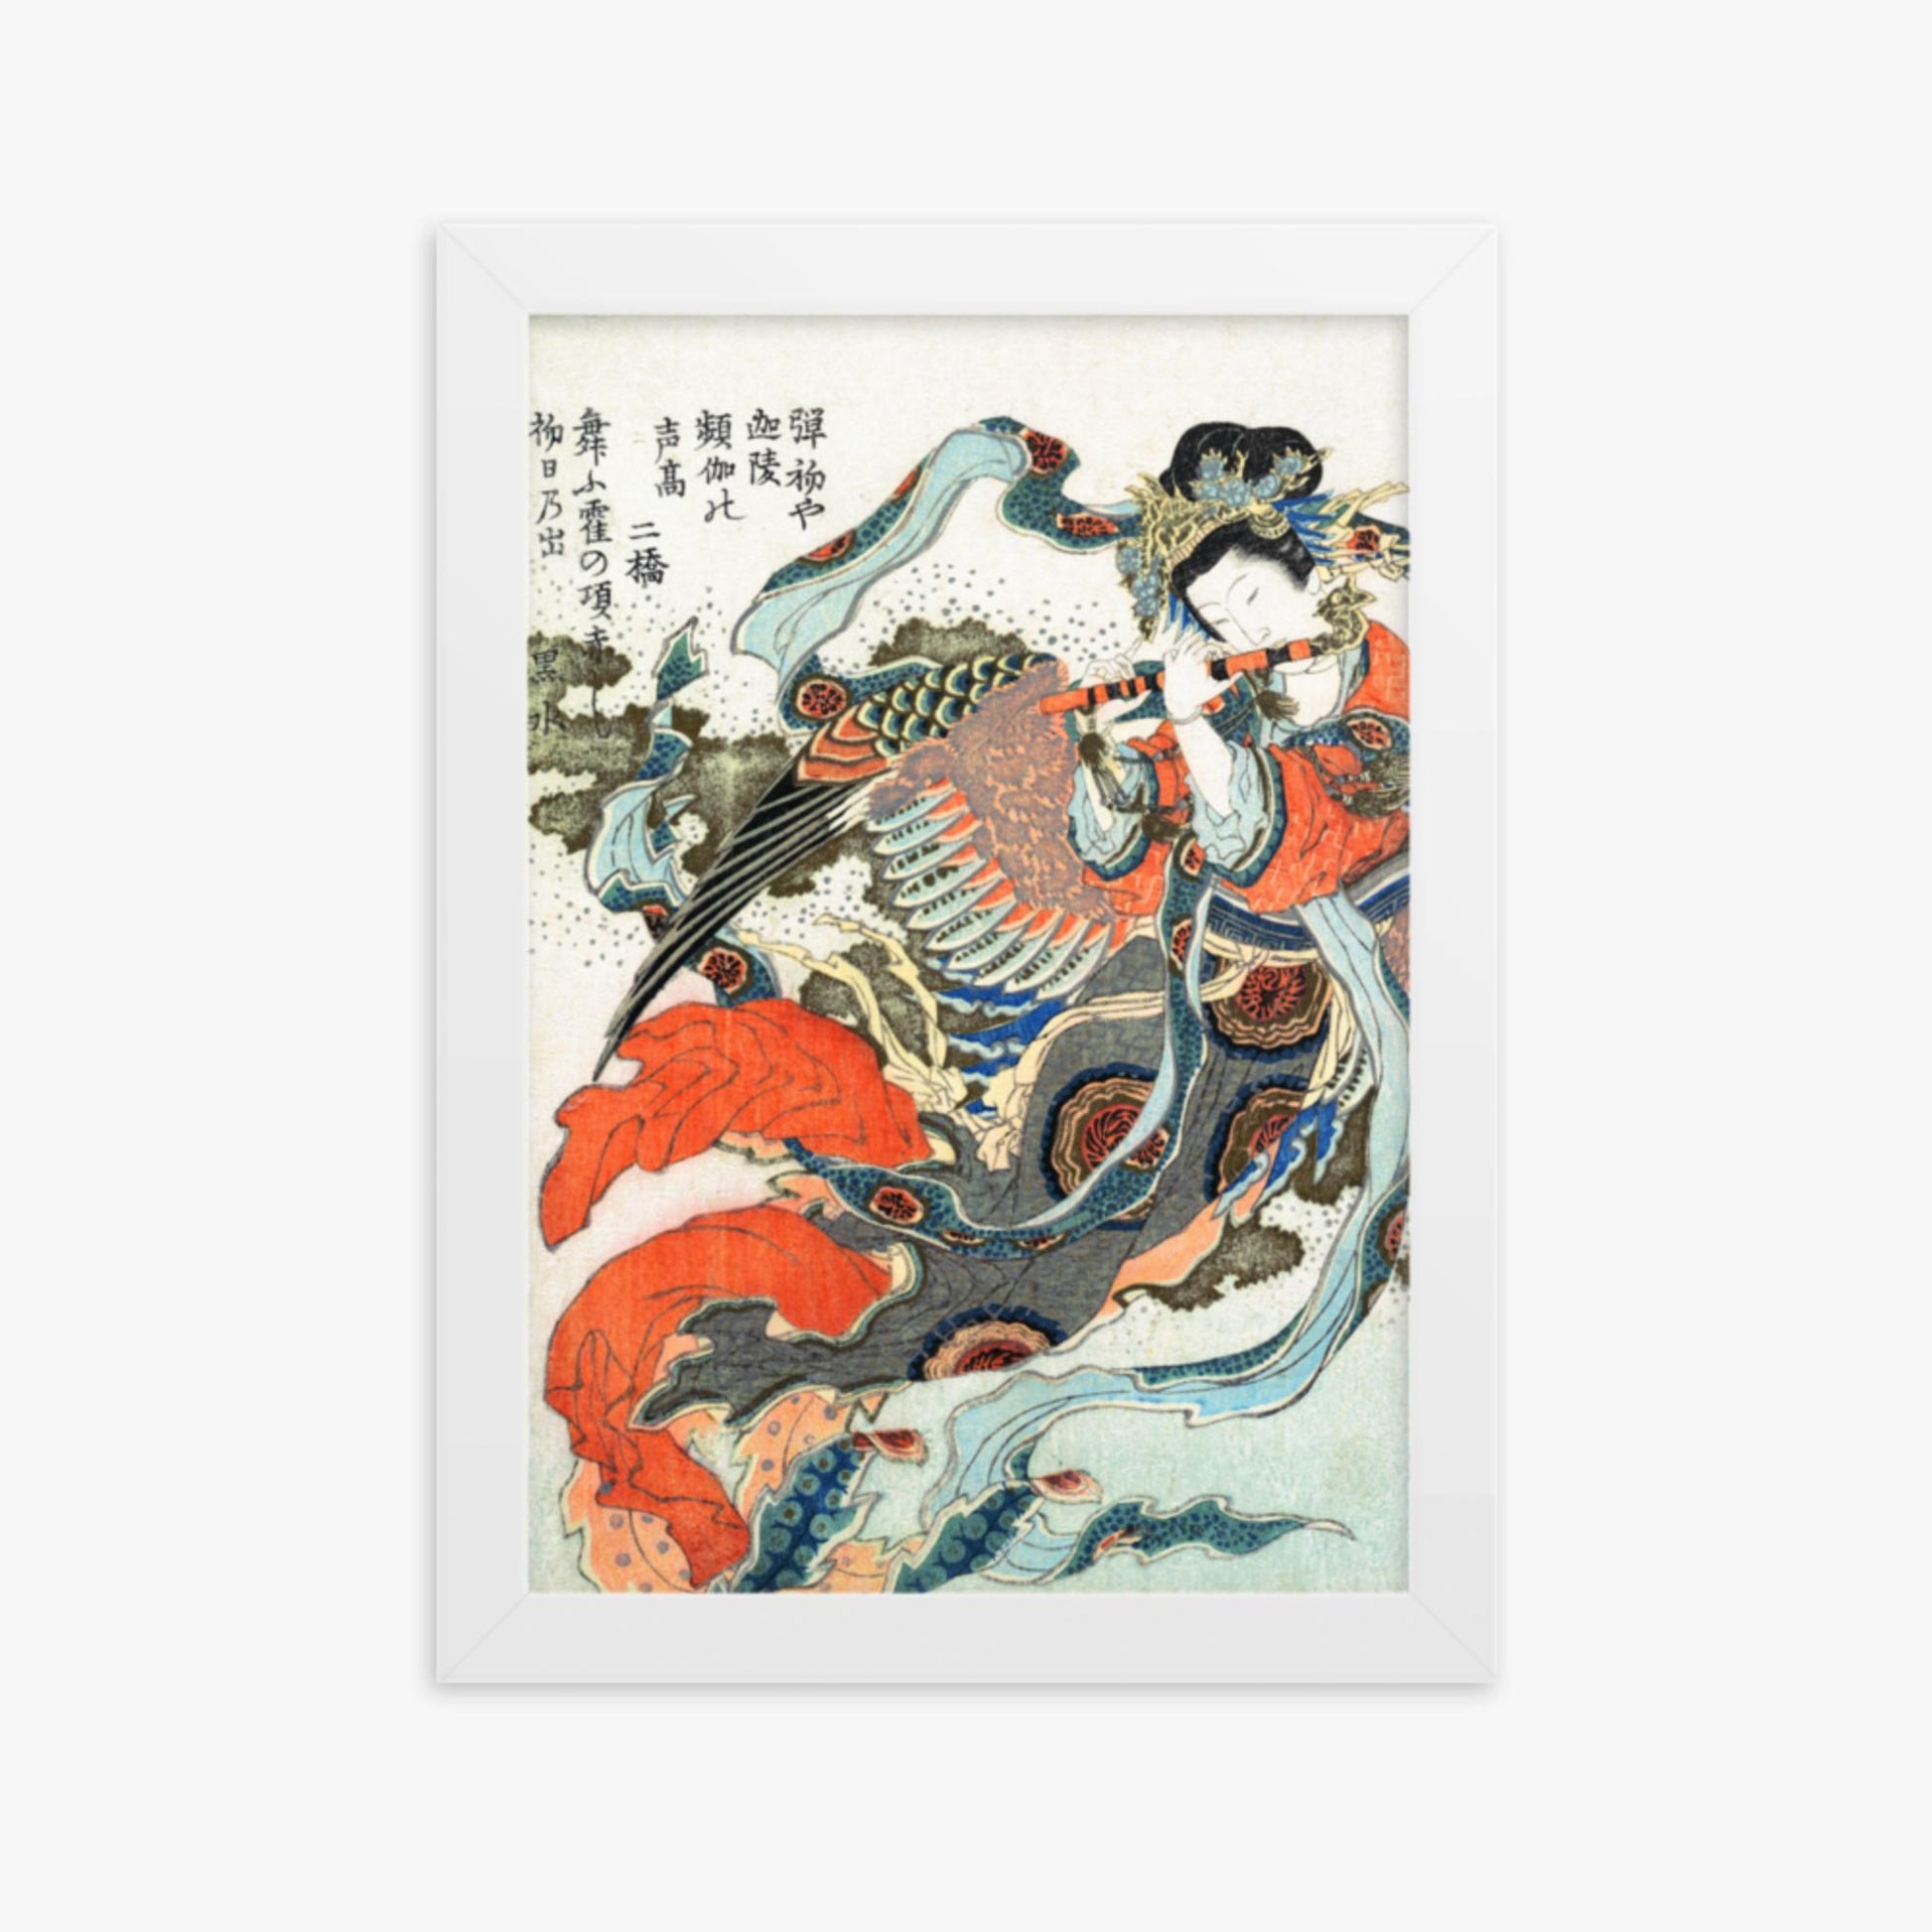 Katsushika Hokusai - Mystical Bird 21x30 cm Poster With White Frame